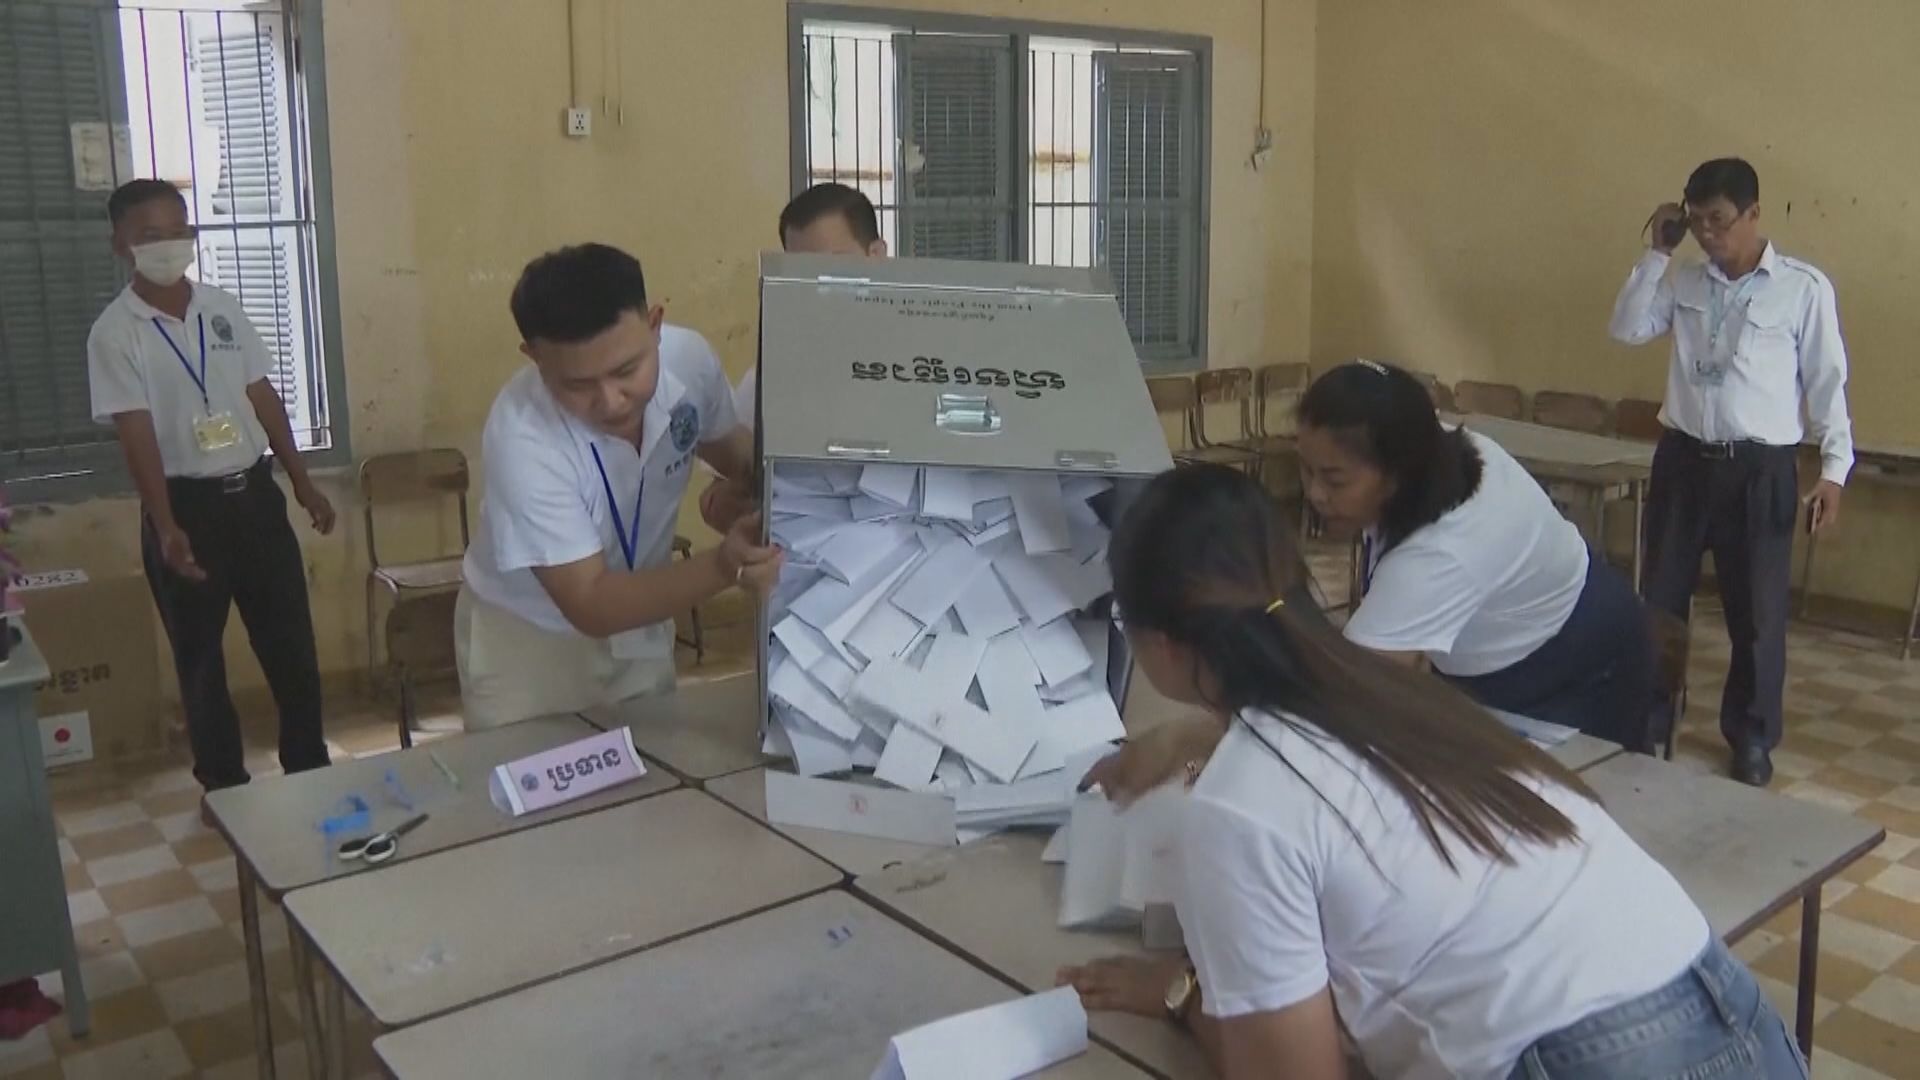 柬埔寨大選投票結束 執政人民黨宣稱大勝